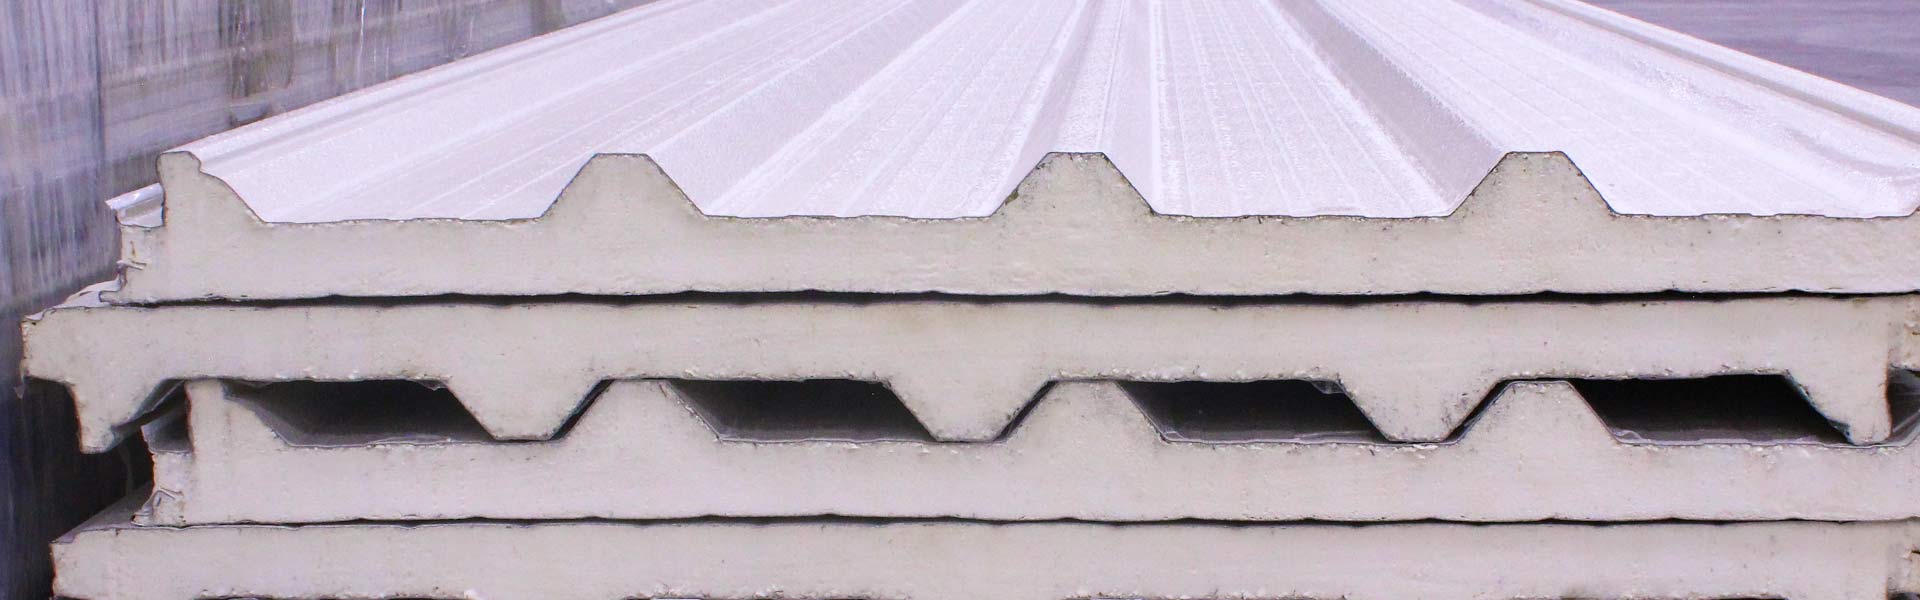 panel aislante de acero cabecera